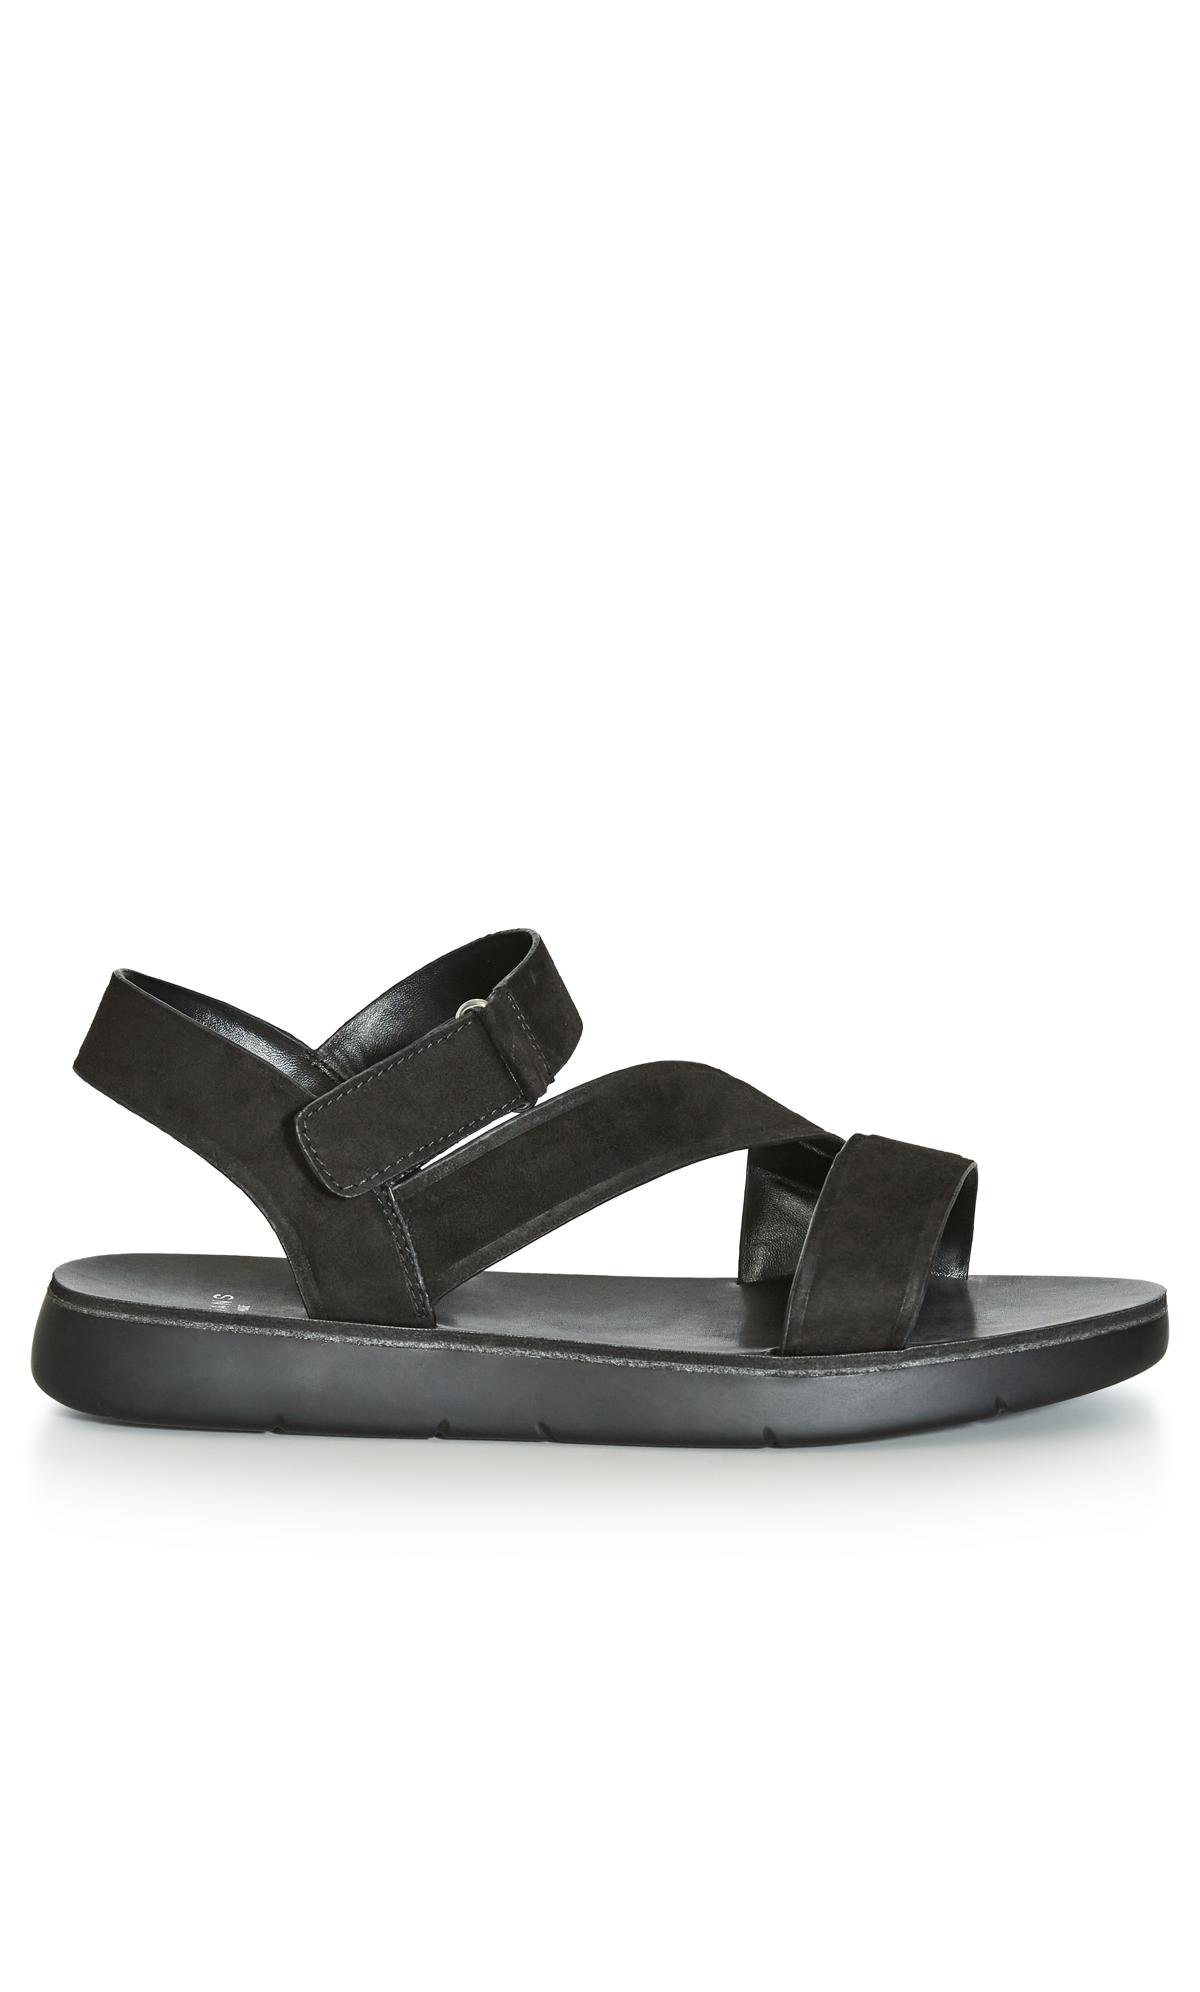 Plus Size Cross Strap Sporty Sandal Black 2